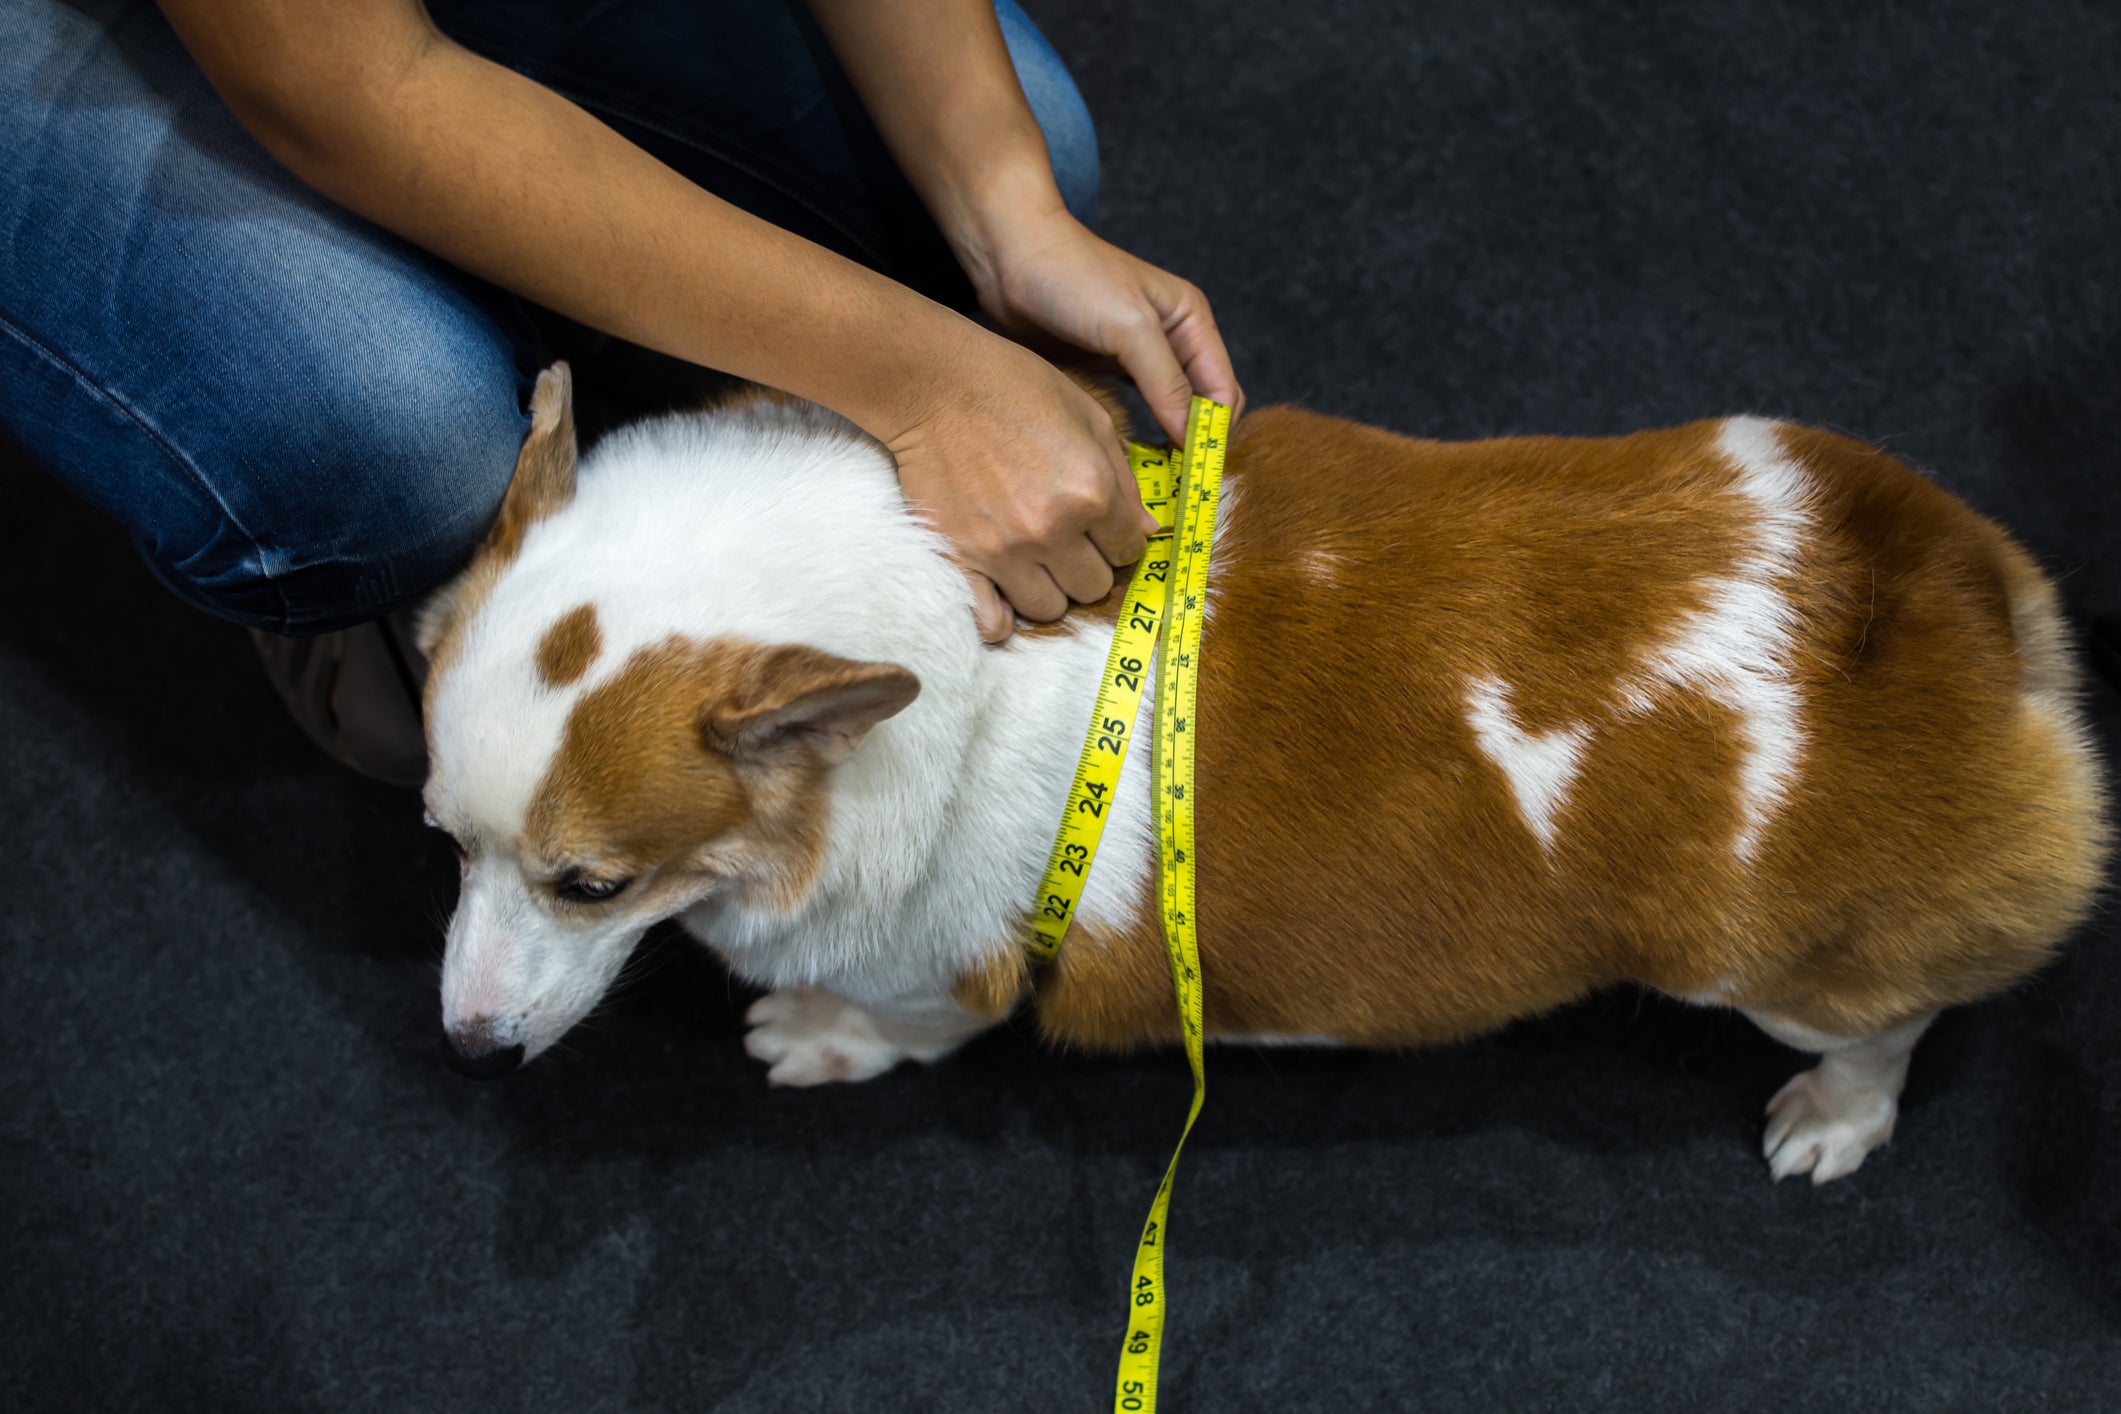 Cachorro acima do peso tendo sua largura medida com fita métrica por humano